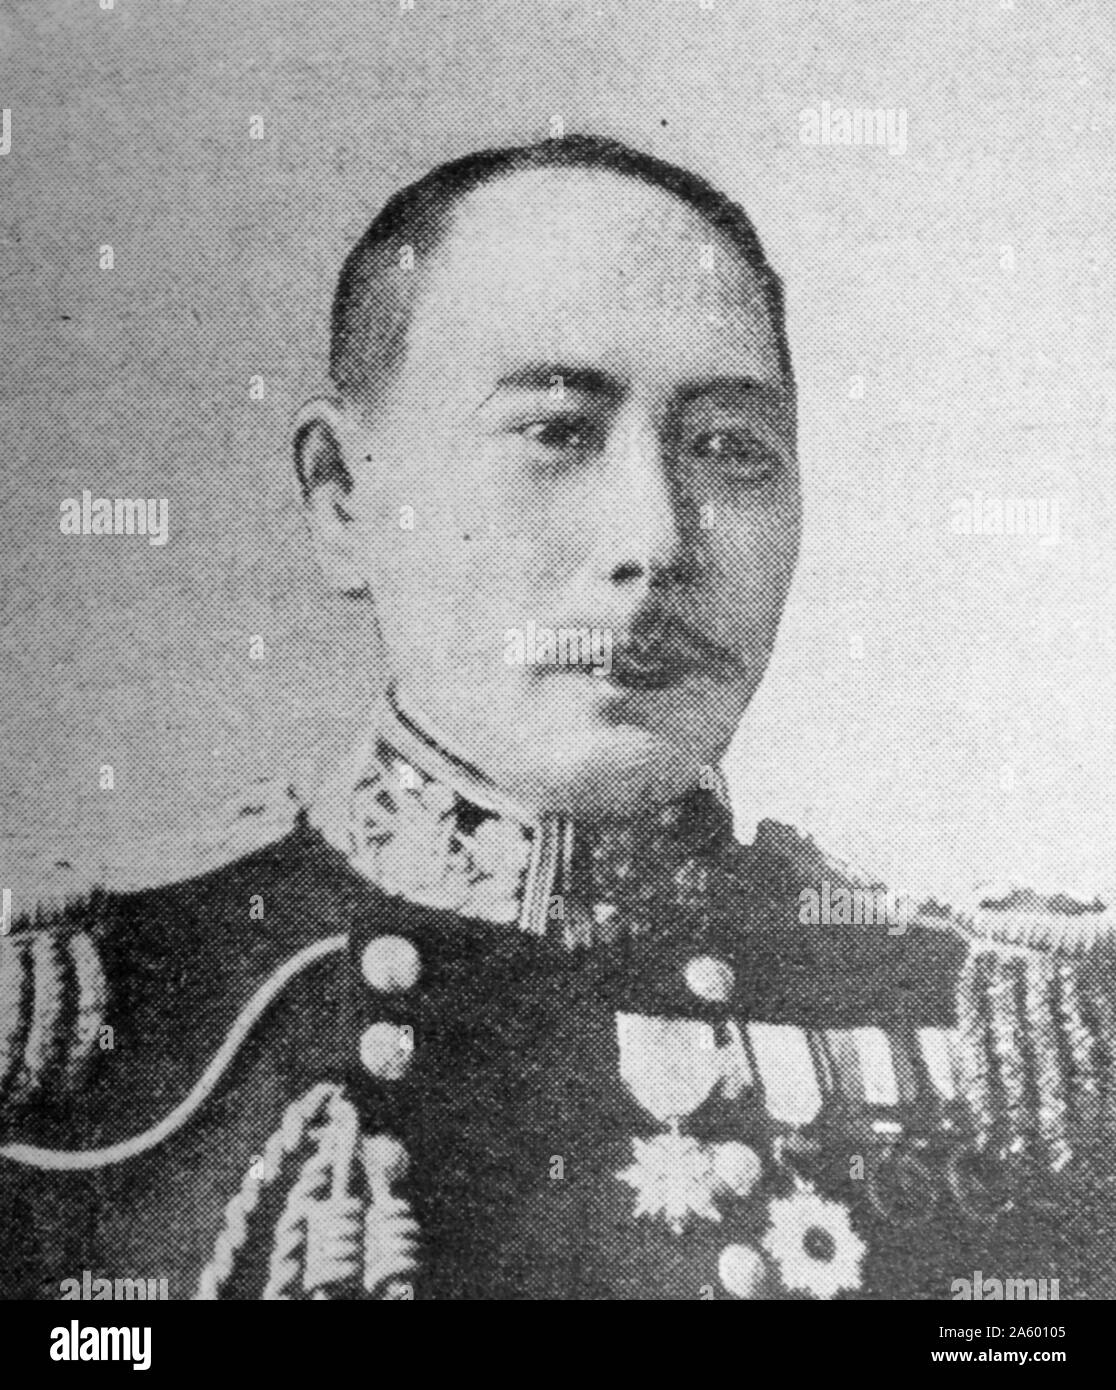 Portrait photographique de Kamimura Hikonoj ? (1849-1916) un amiral de la Marine impériale japonaise plus tard commandant la 2ème IJN flotte au cours de la guerre russo-japonaise, notamment à la bataille d'Ulsan et de Tsushima. Banque D'Images